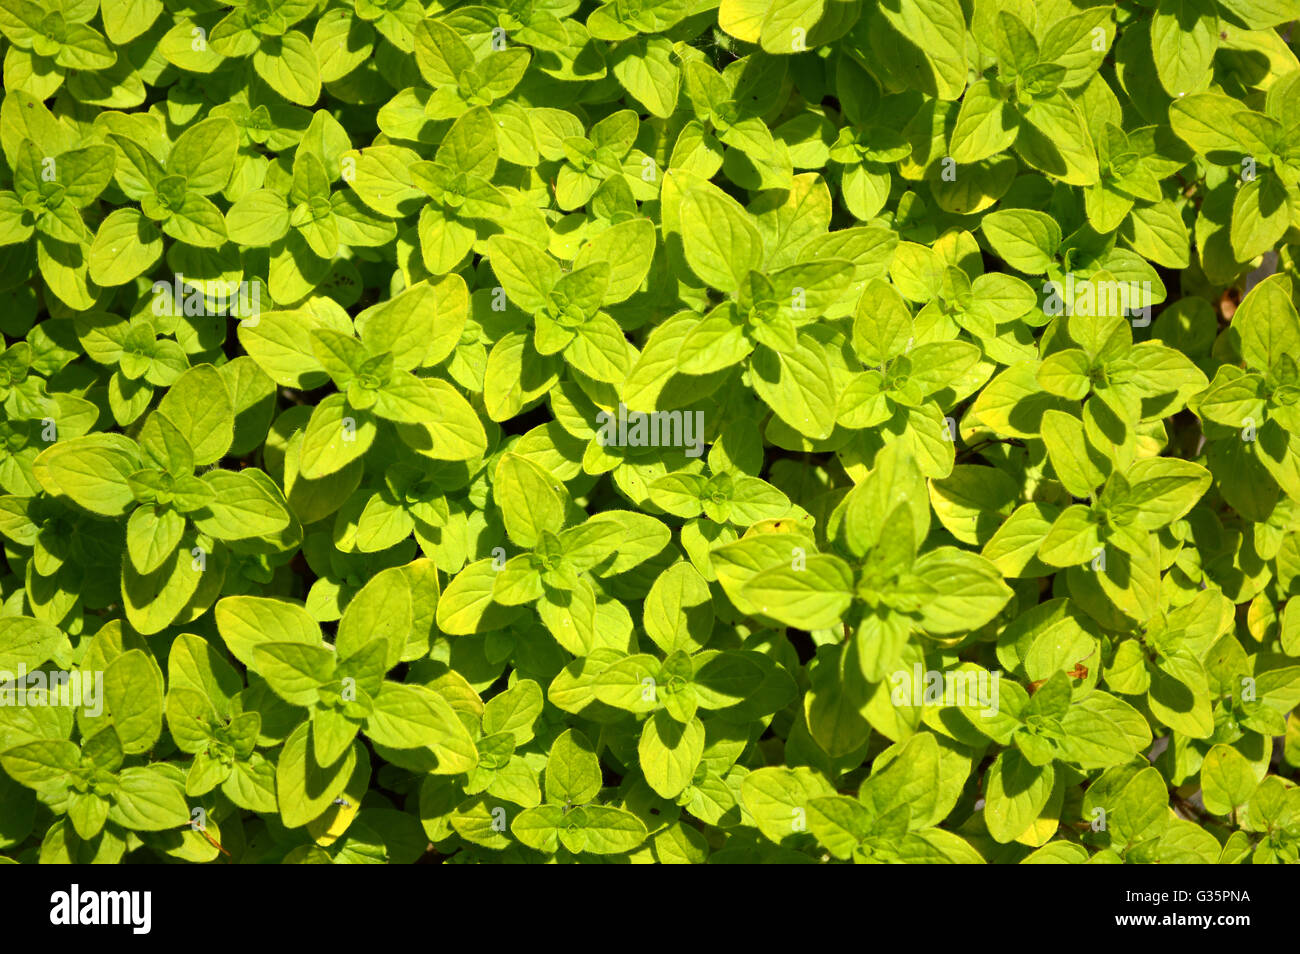 Ein Teppich aus grünen Blättern im Garten Blumentopf Stockfoto